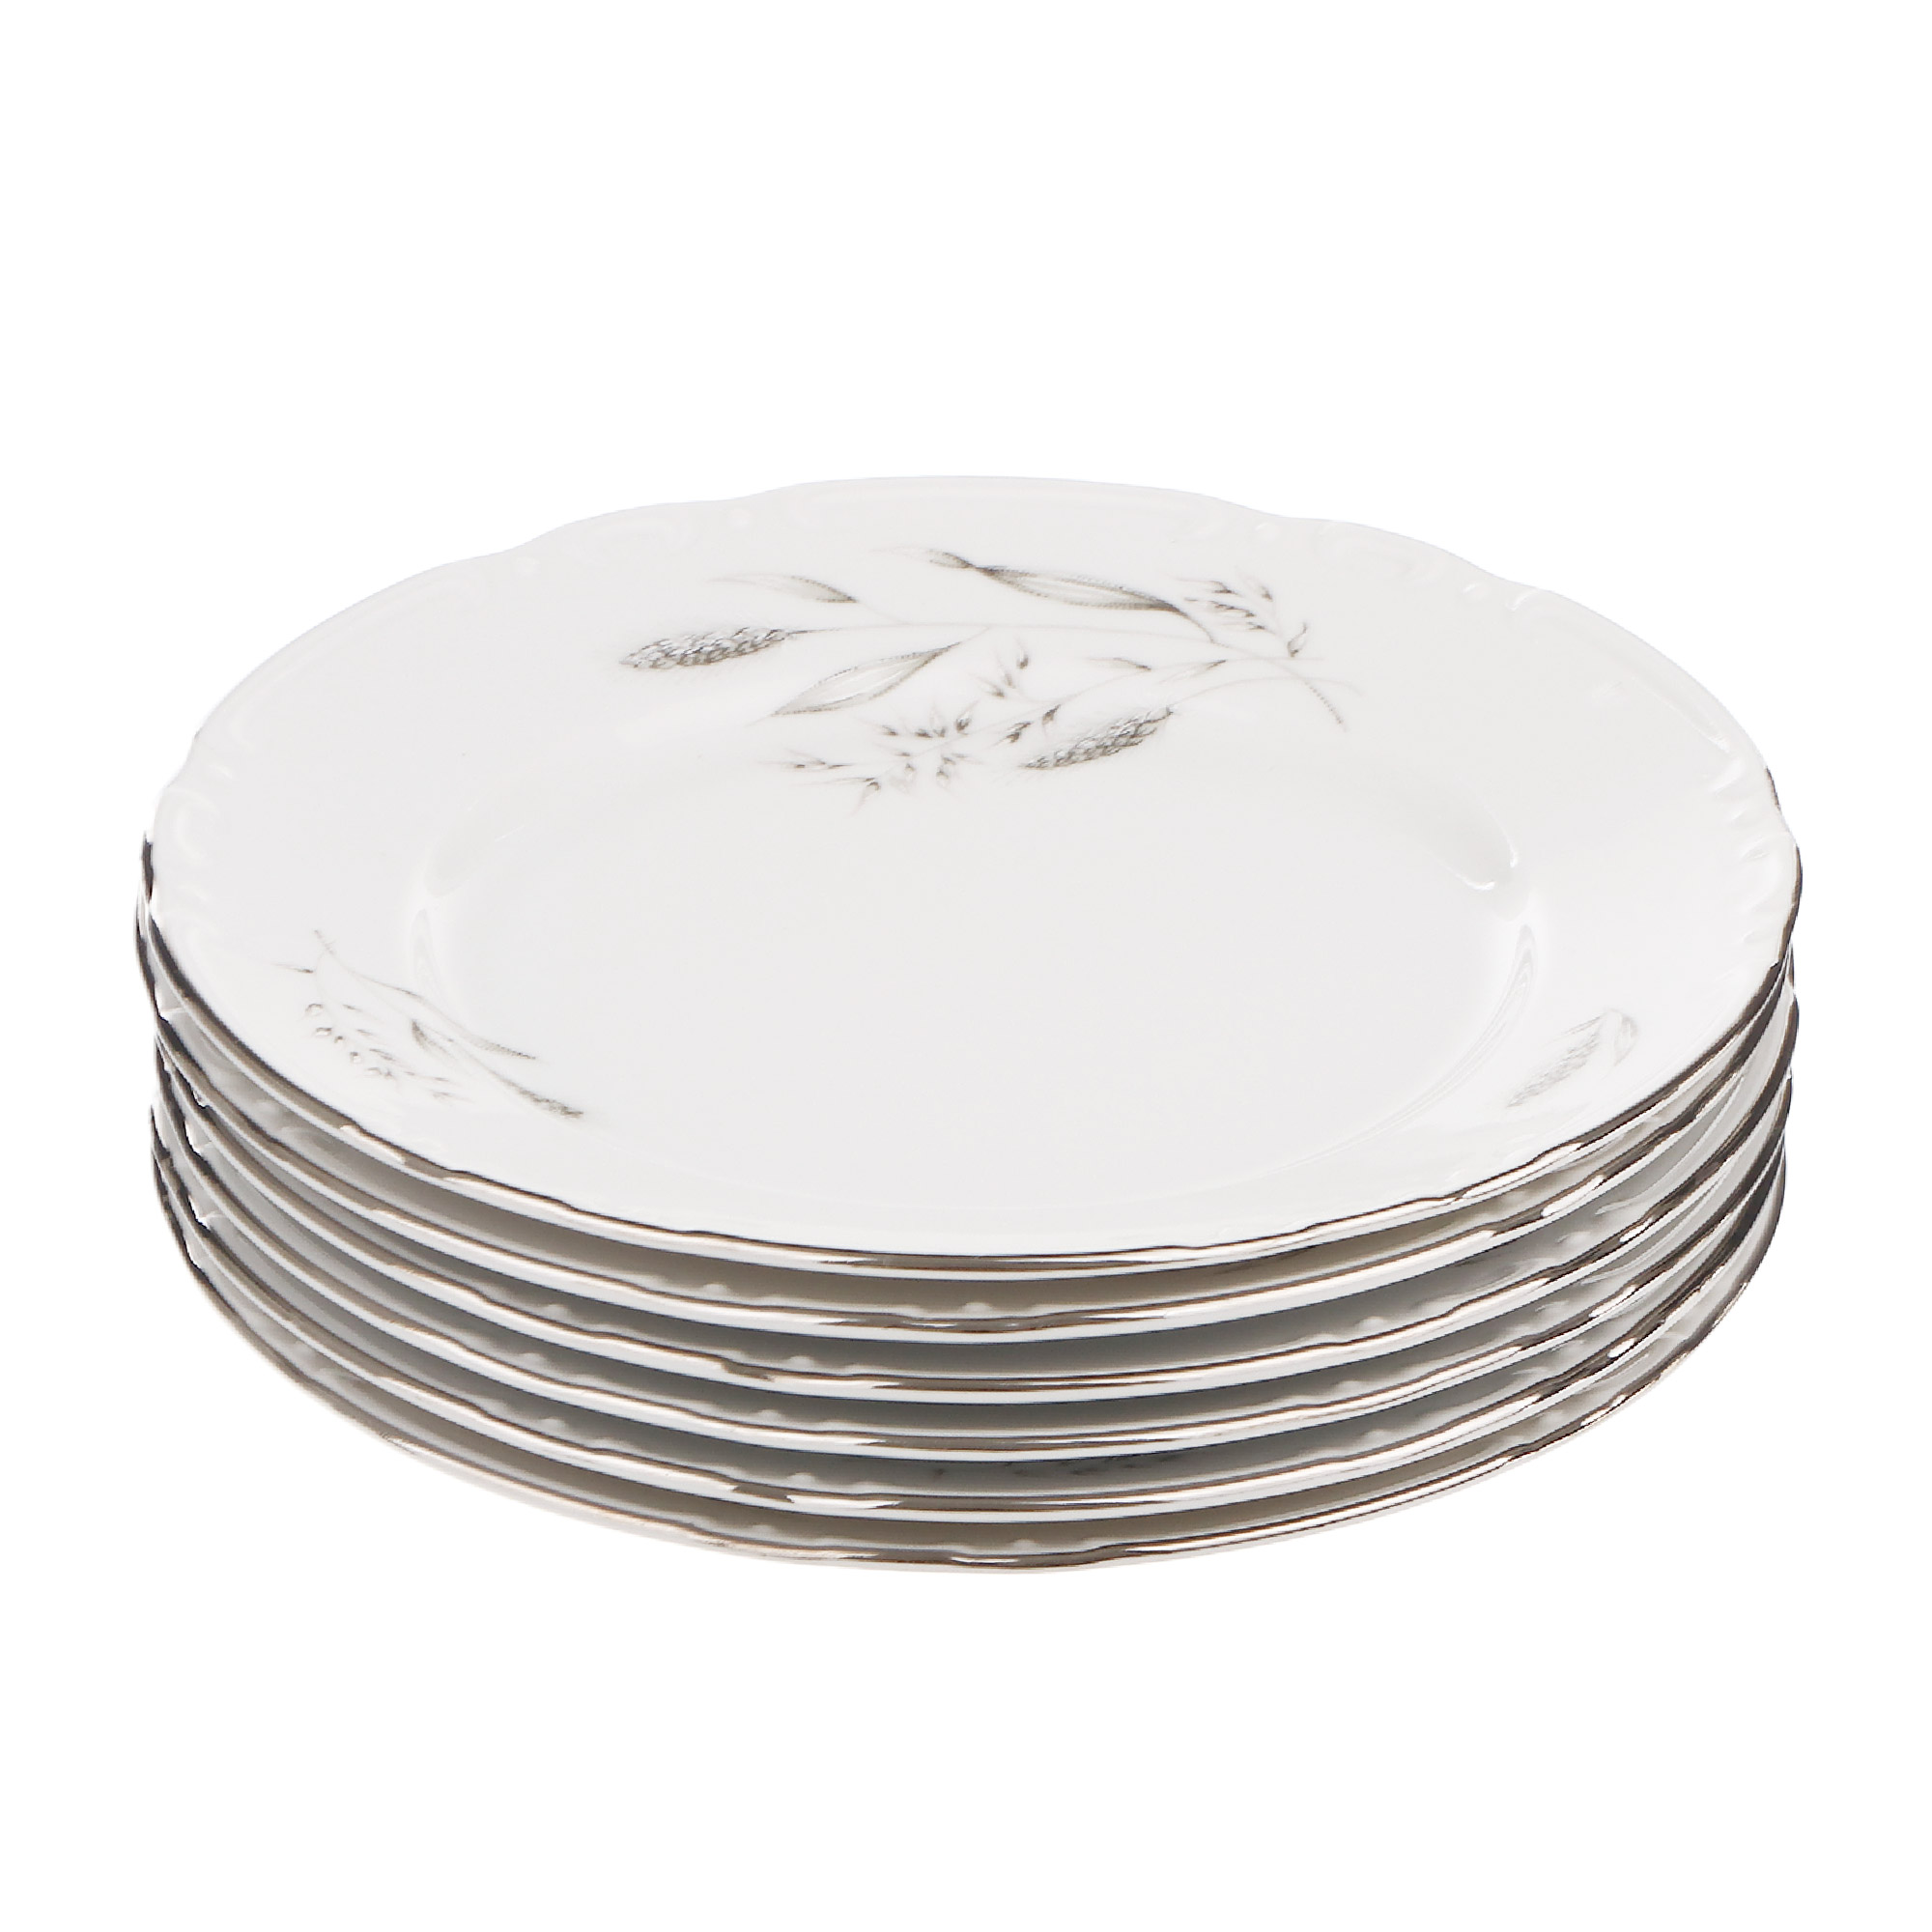 Набор десертных тарелок Thun1794 декор серебряные колосья, отводка платина 17 см 6 шт набор муслиновых кухонных полотенец с графичным принтом колосья russian north 50х70